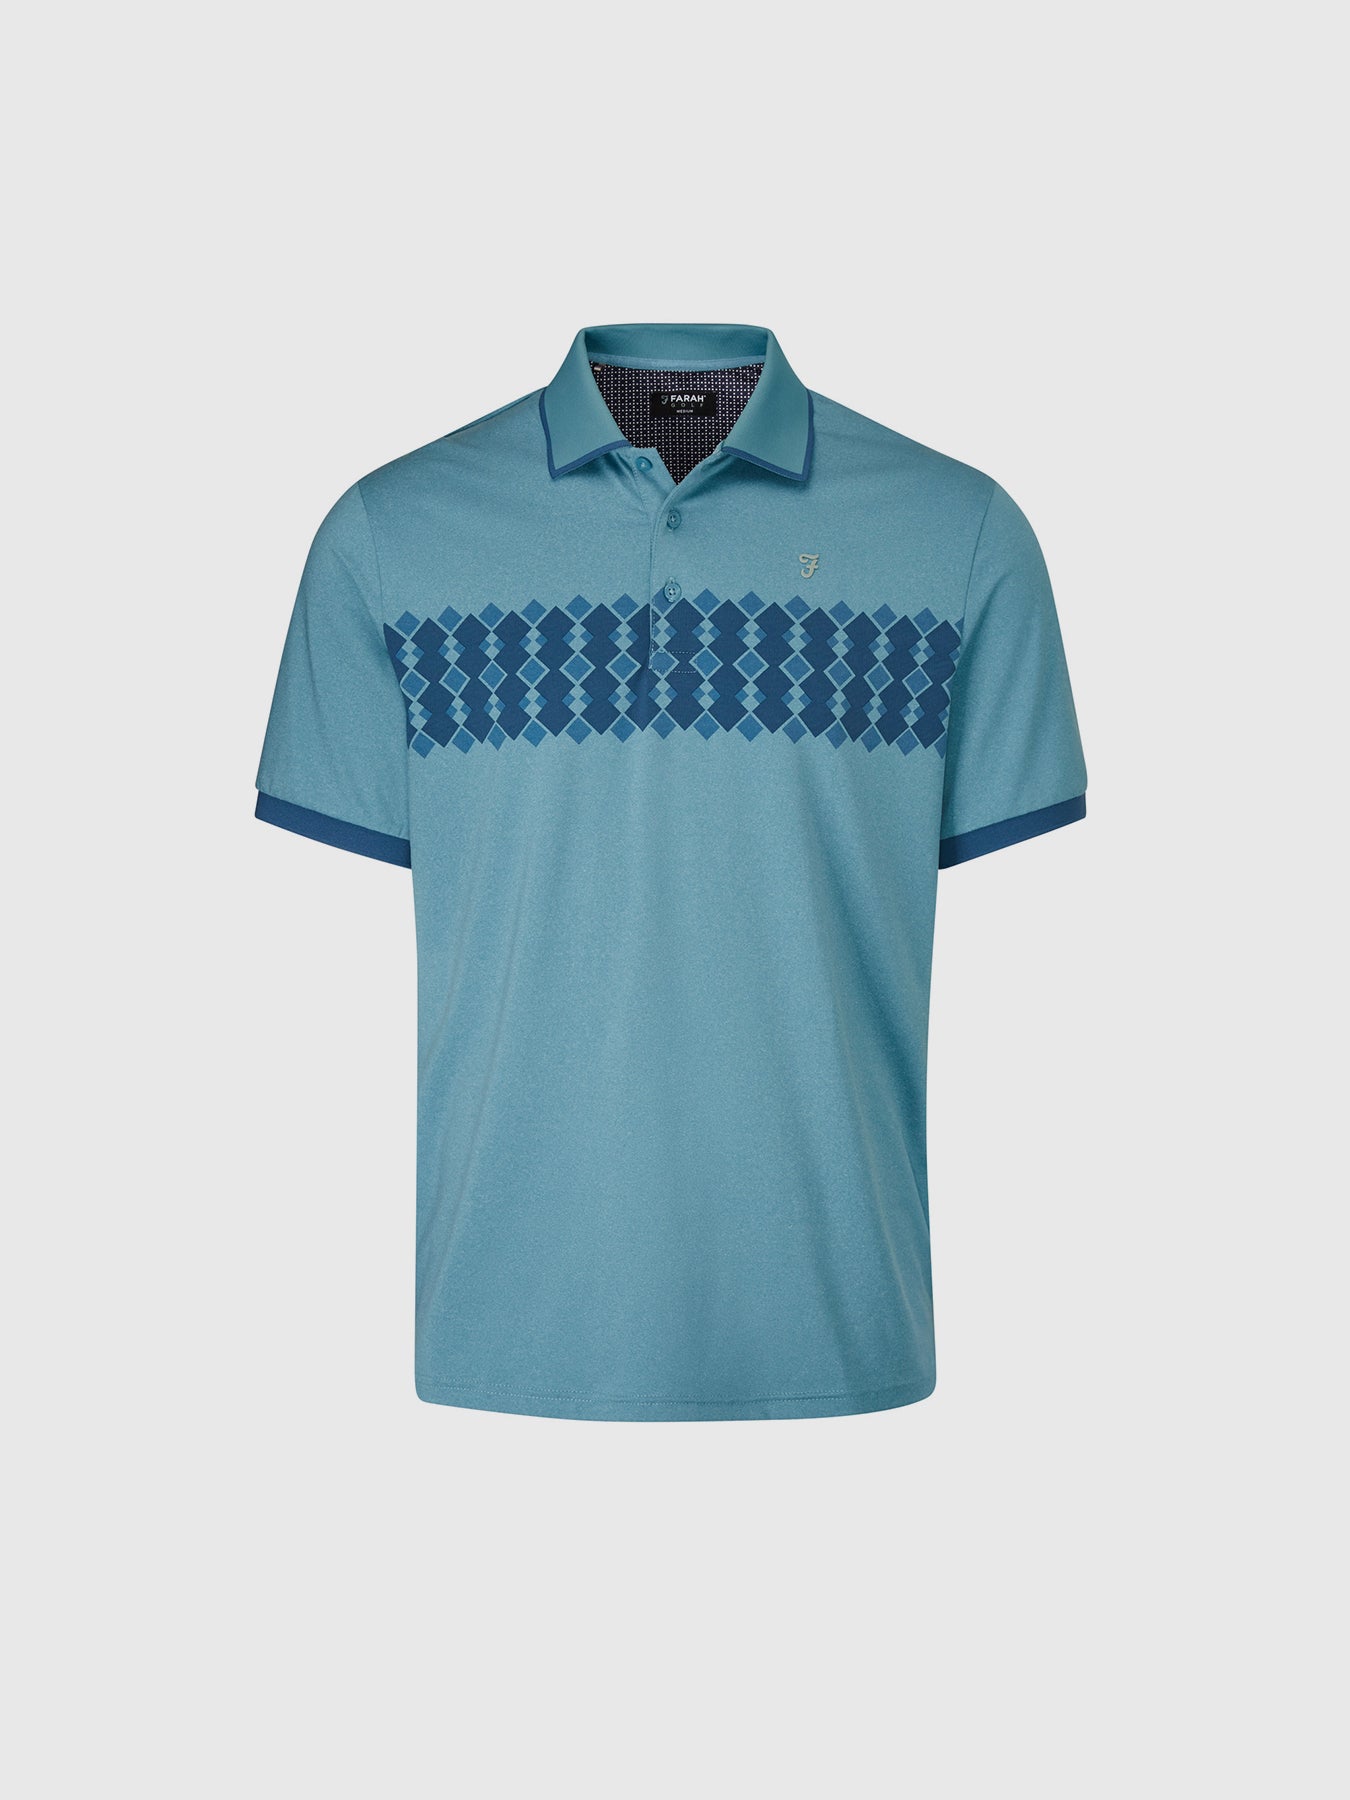 Addison Golf Polo Shirt In Dusky Blue